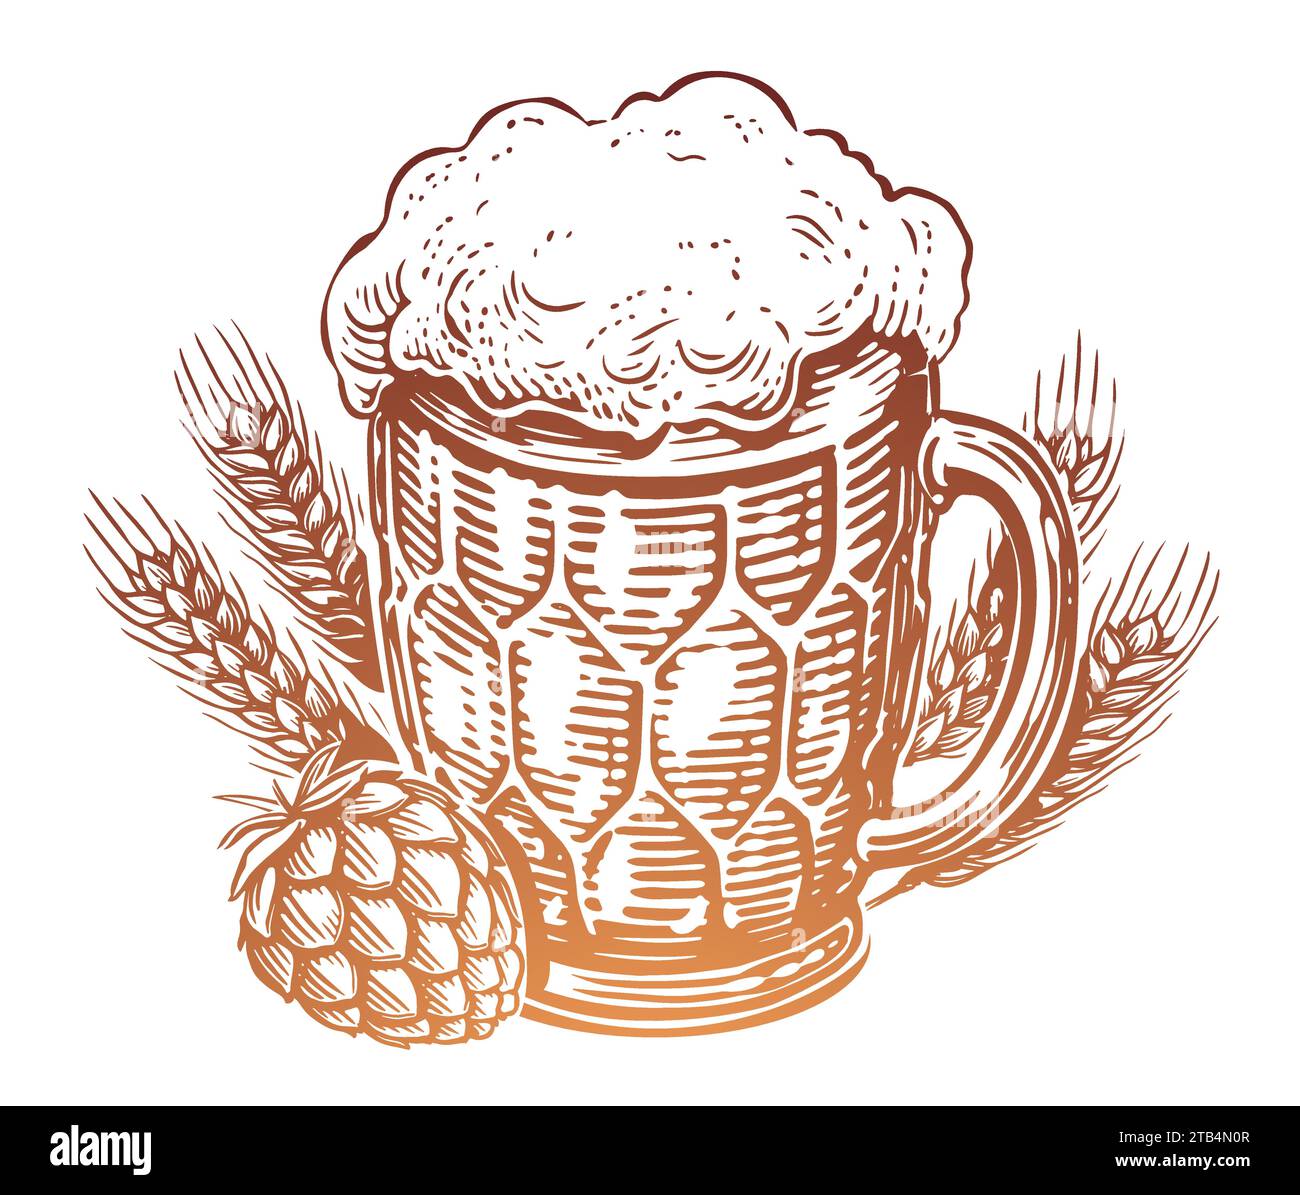 Handgezogener Becher Bier mit Schaum, Hopfen und Weizen. Pub, Skizze Vintage Vektor Illustration Stock Vektor